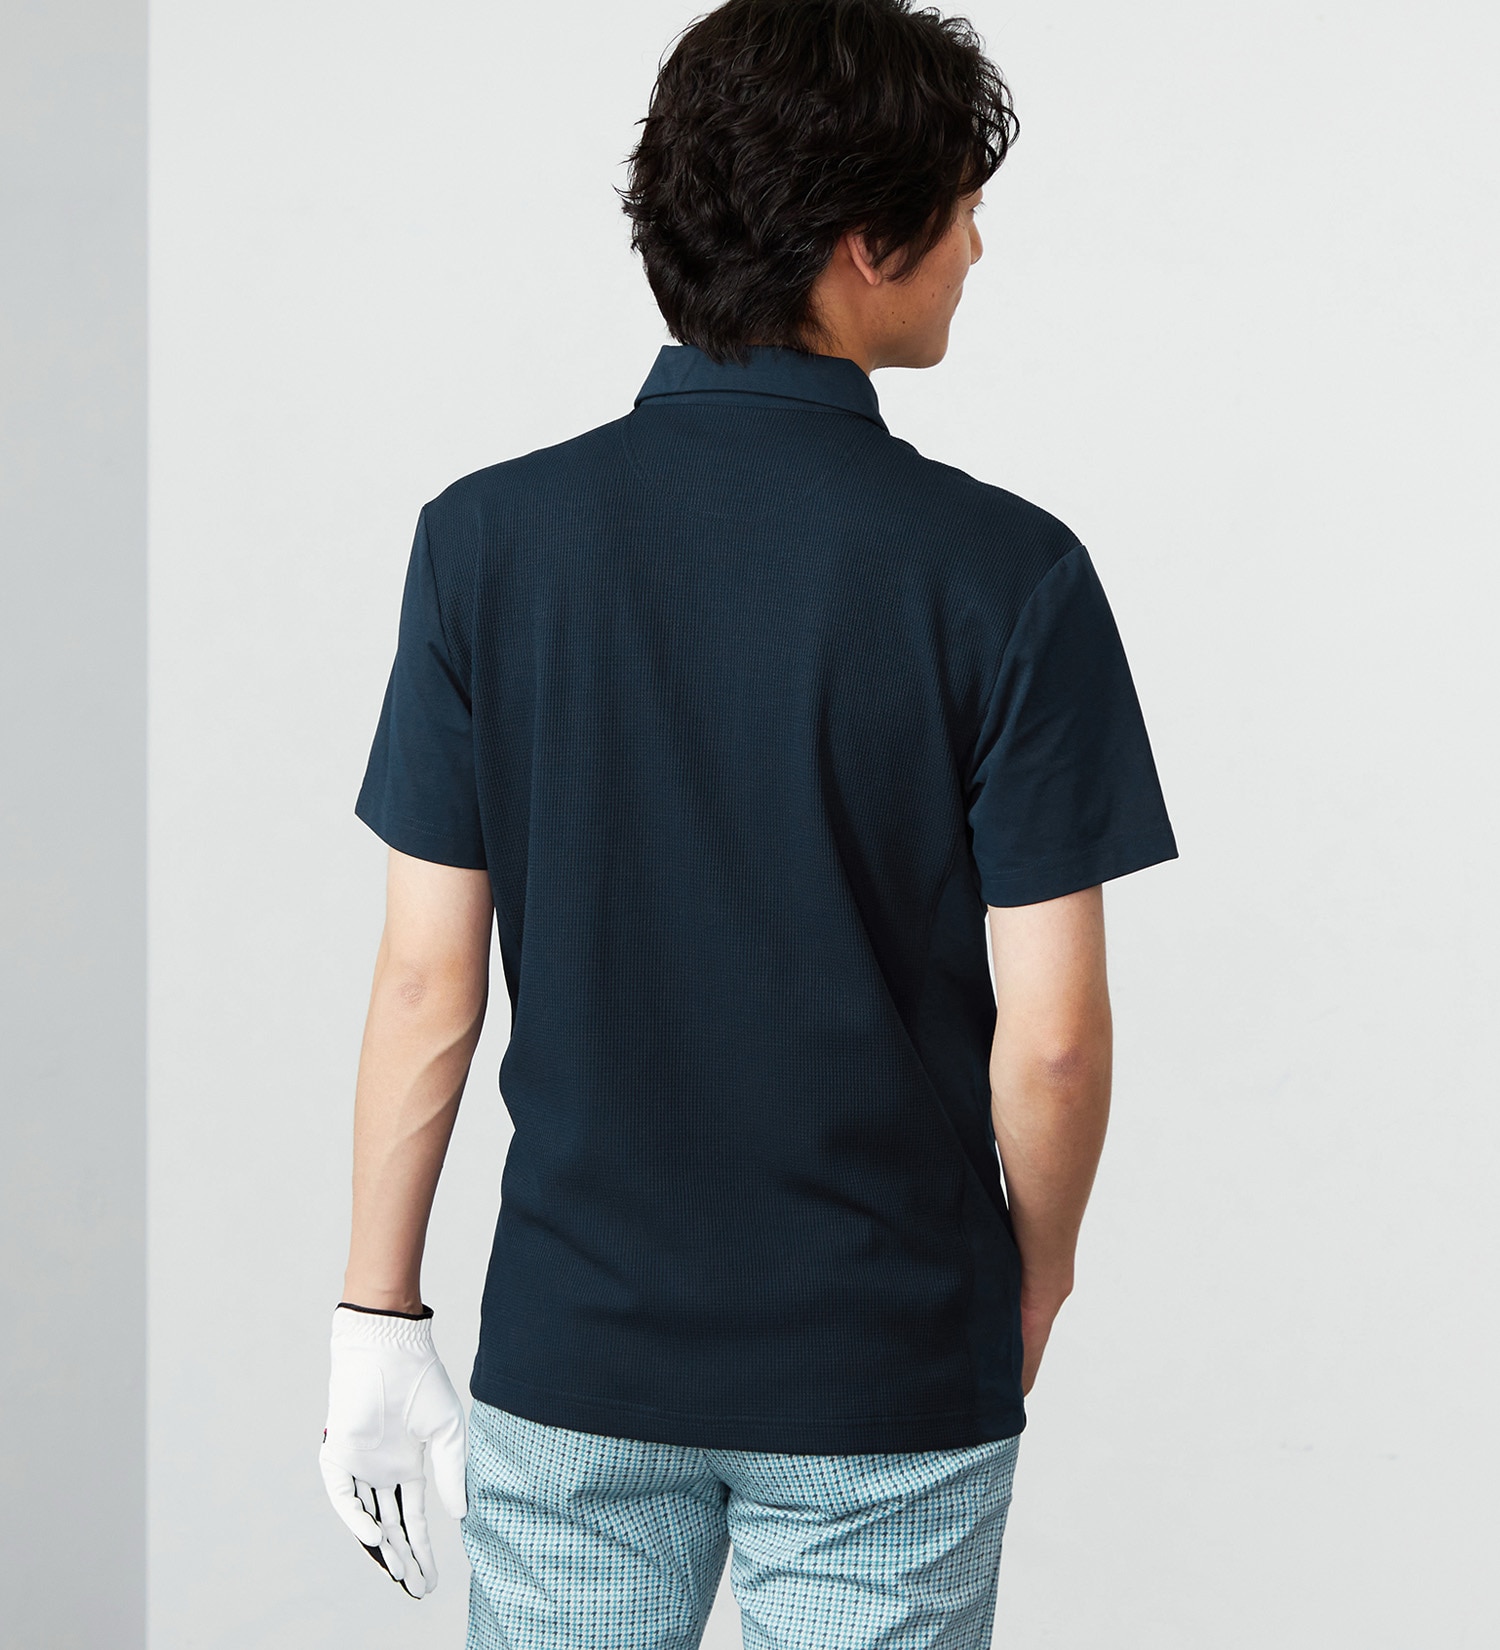 EDWIN(エドウイン)のEDWIN GOLF ミニワッフルポロシャツ半袖Tシャツ|トップス/Tシャツ/カットソー/メンズ|ネイビー